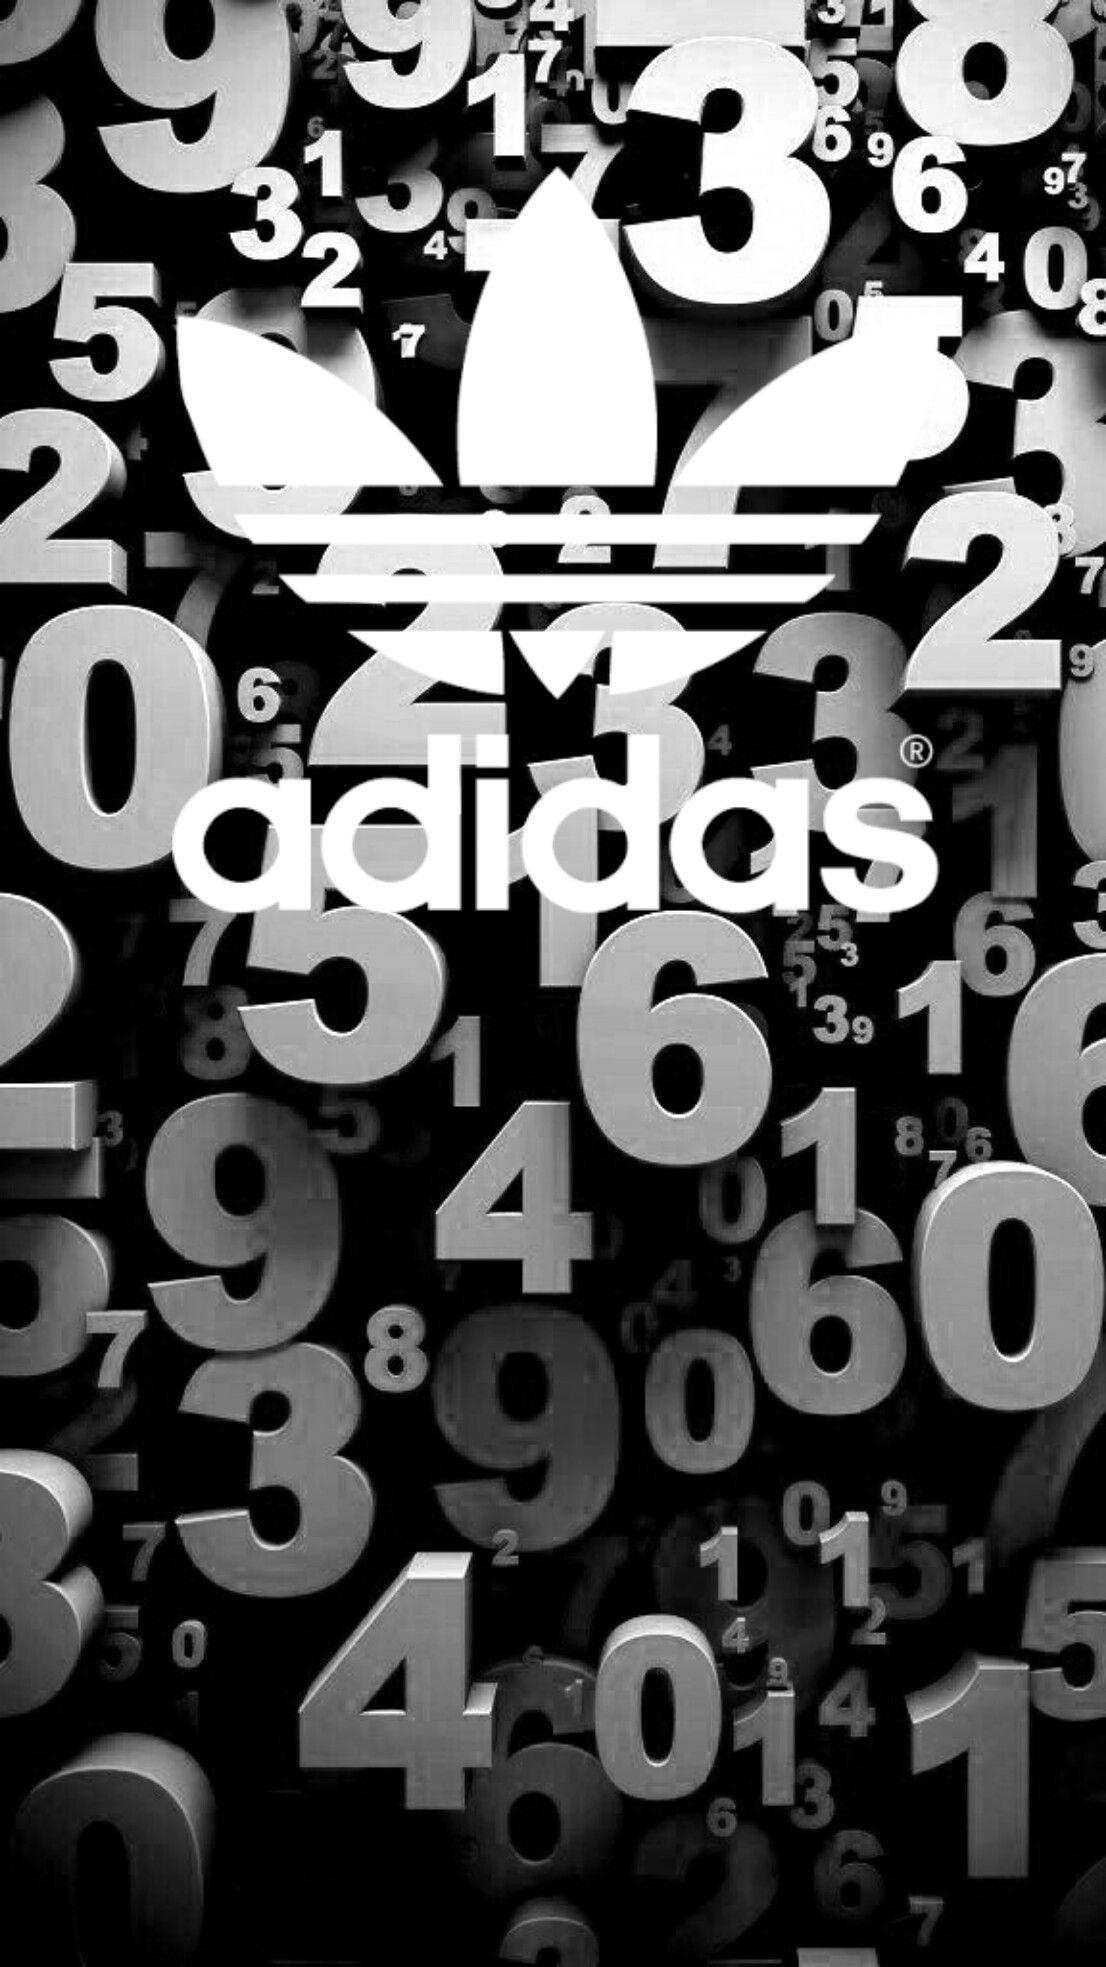 Adidas Wallpaper HD Android. (63++ Wallpaper)